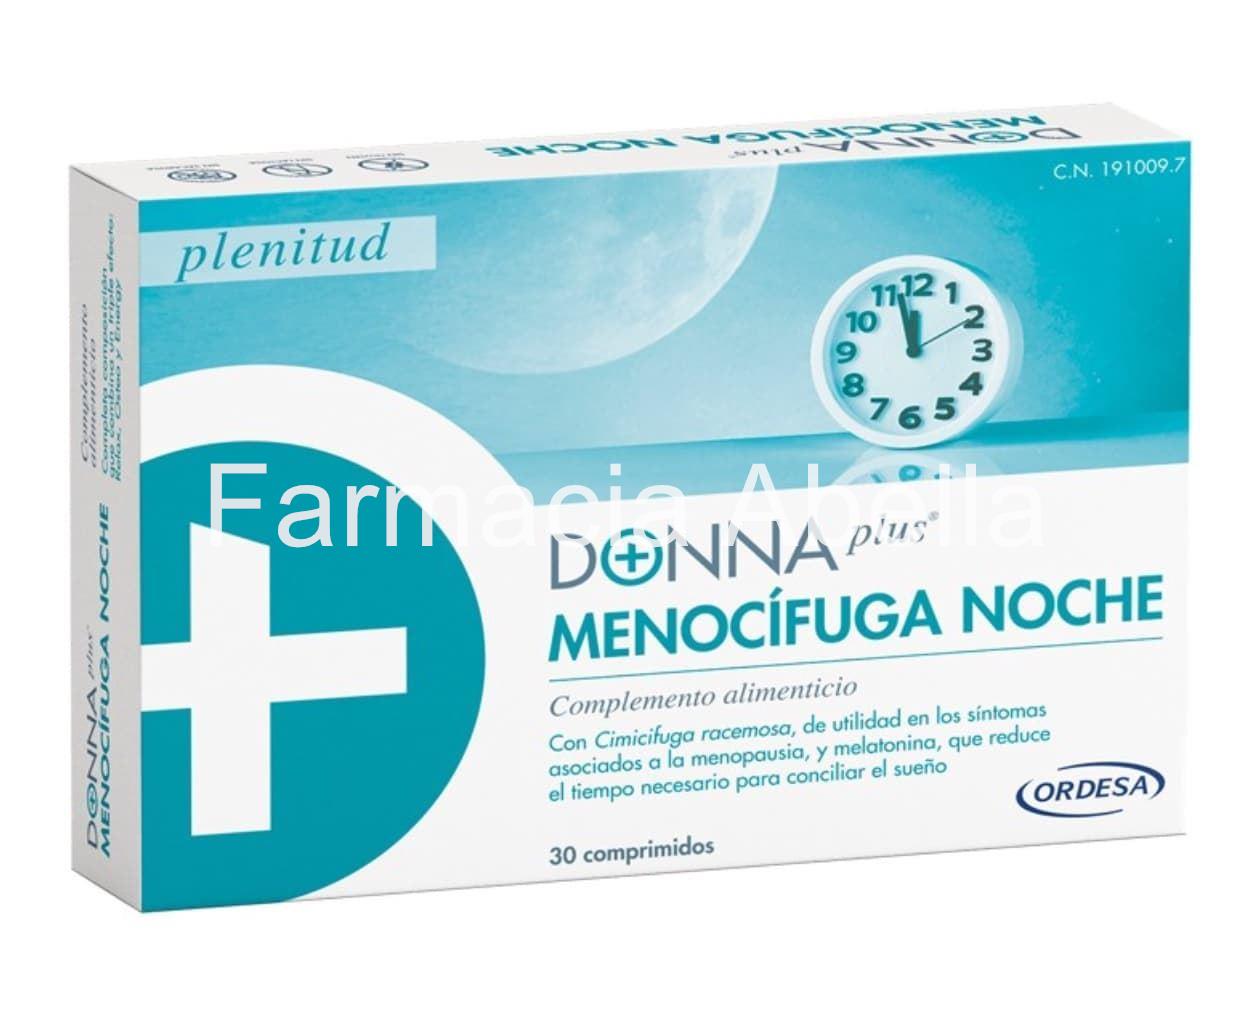 Donna plus menocífuga noche 30 comprimidos - Imagen 1